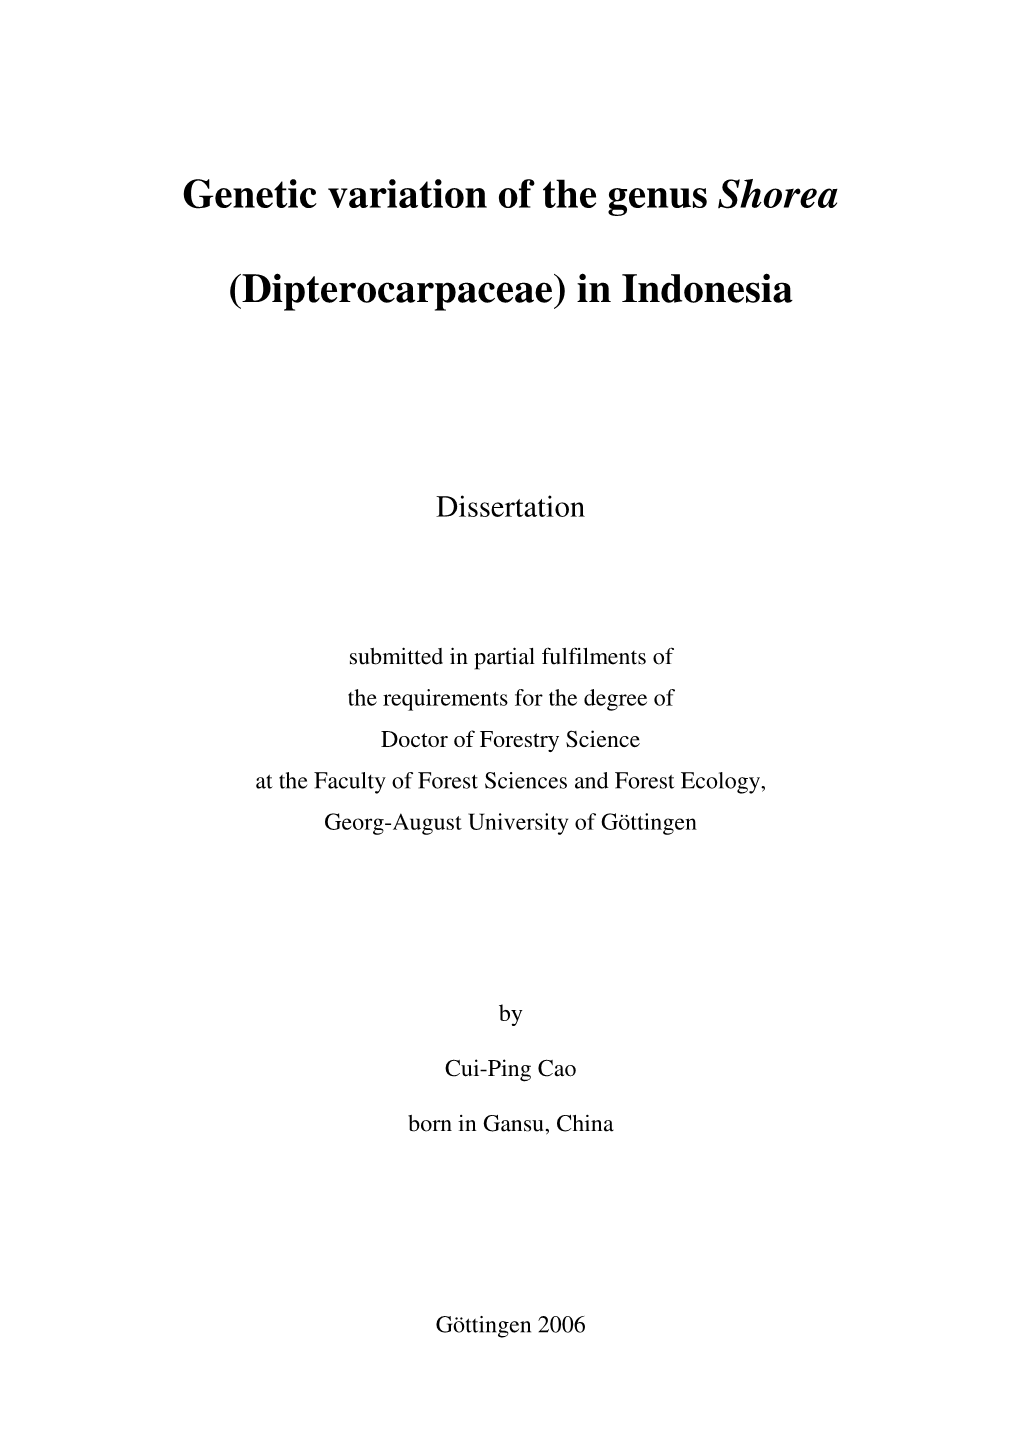 Genetic Variation of the Genus Shorea (Dipterocarpaceae) in Indonesia